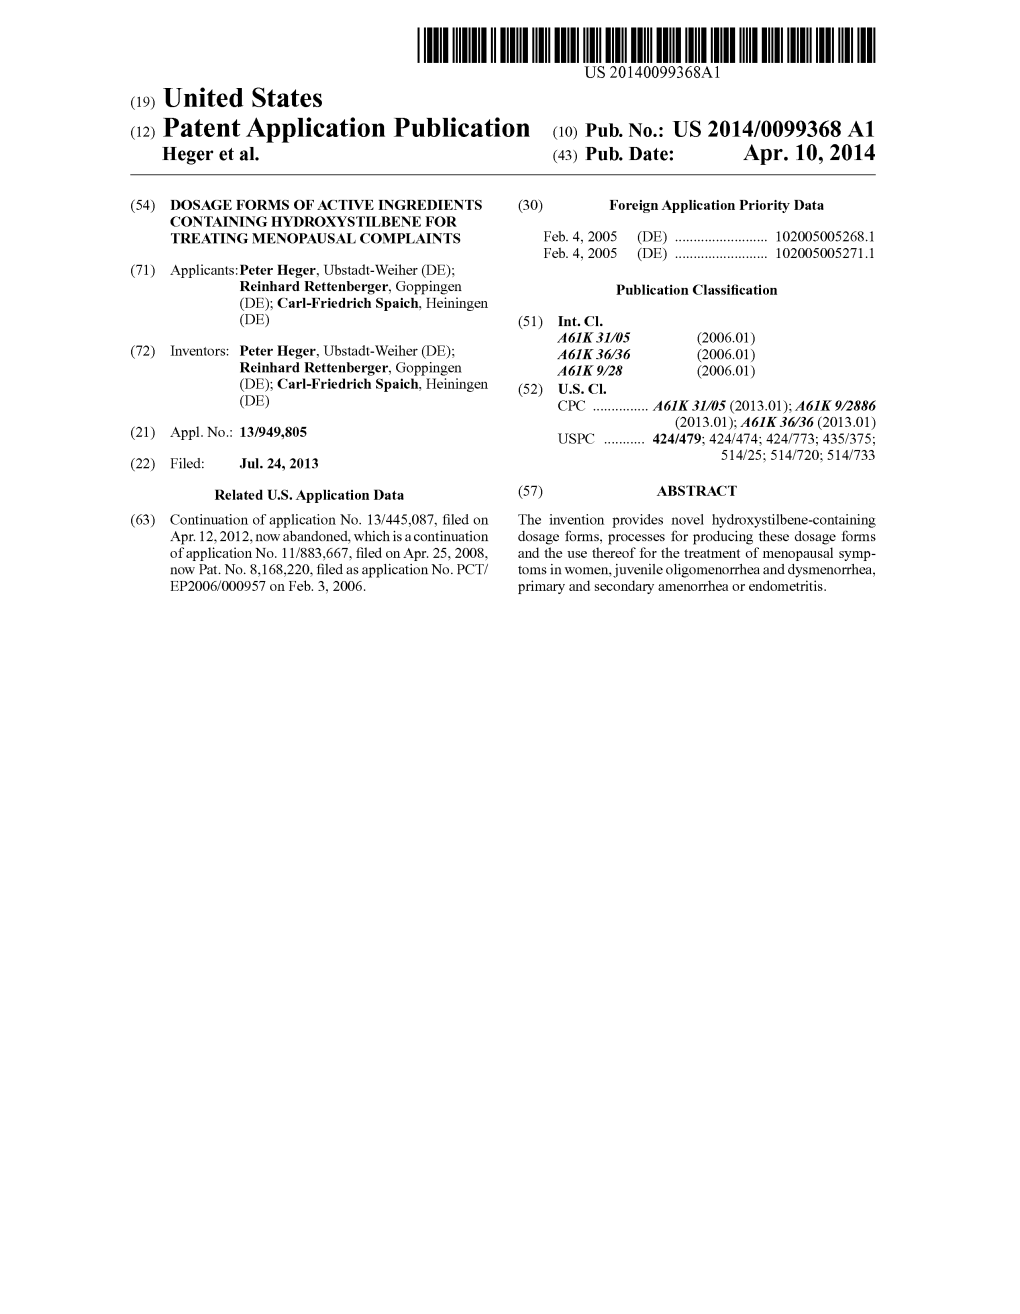 (12) Patent Application Publication (10) Pub. No.: US 2014/0099368 A1 Heger Et Al